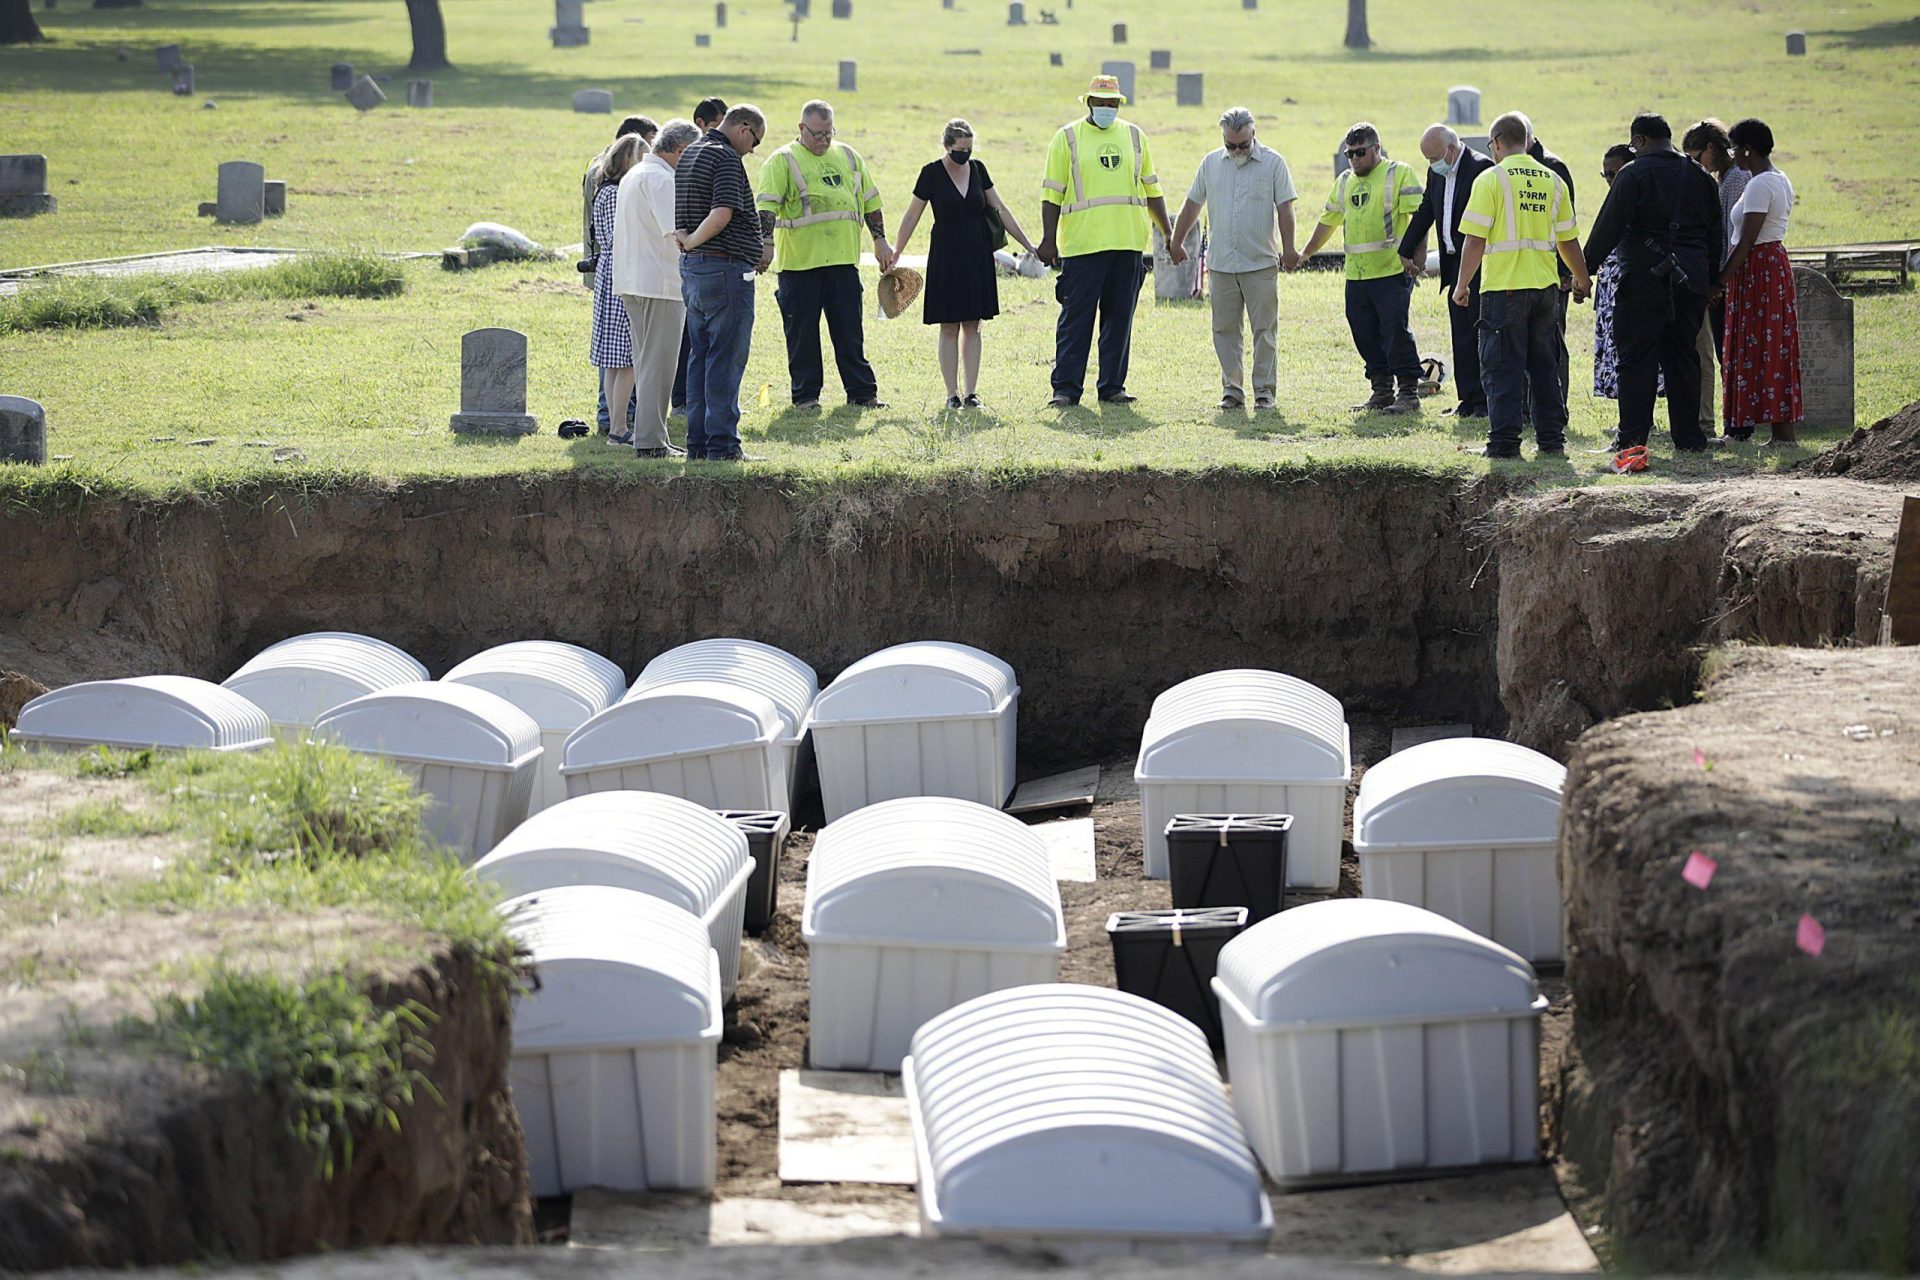 Investigador: El ADN podría identificar a 2 víctimas de la masacre de Tulsa